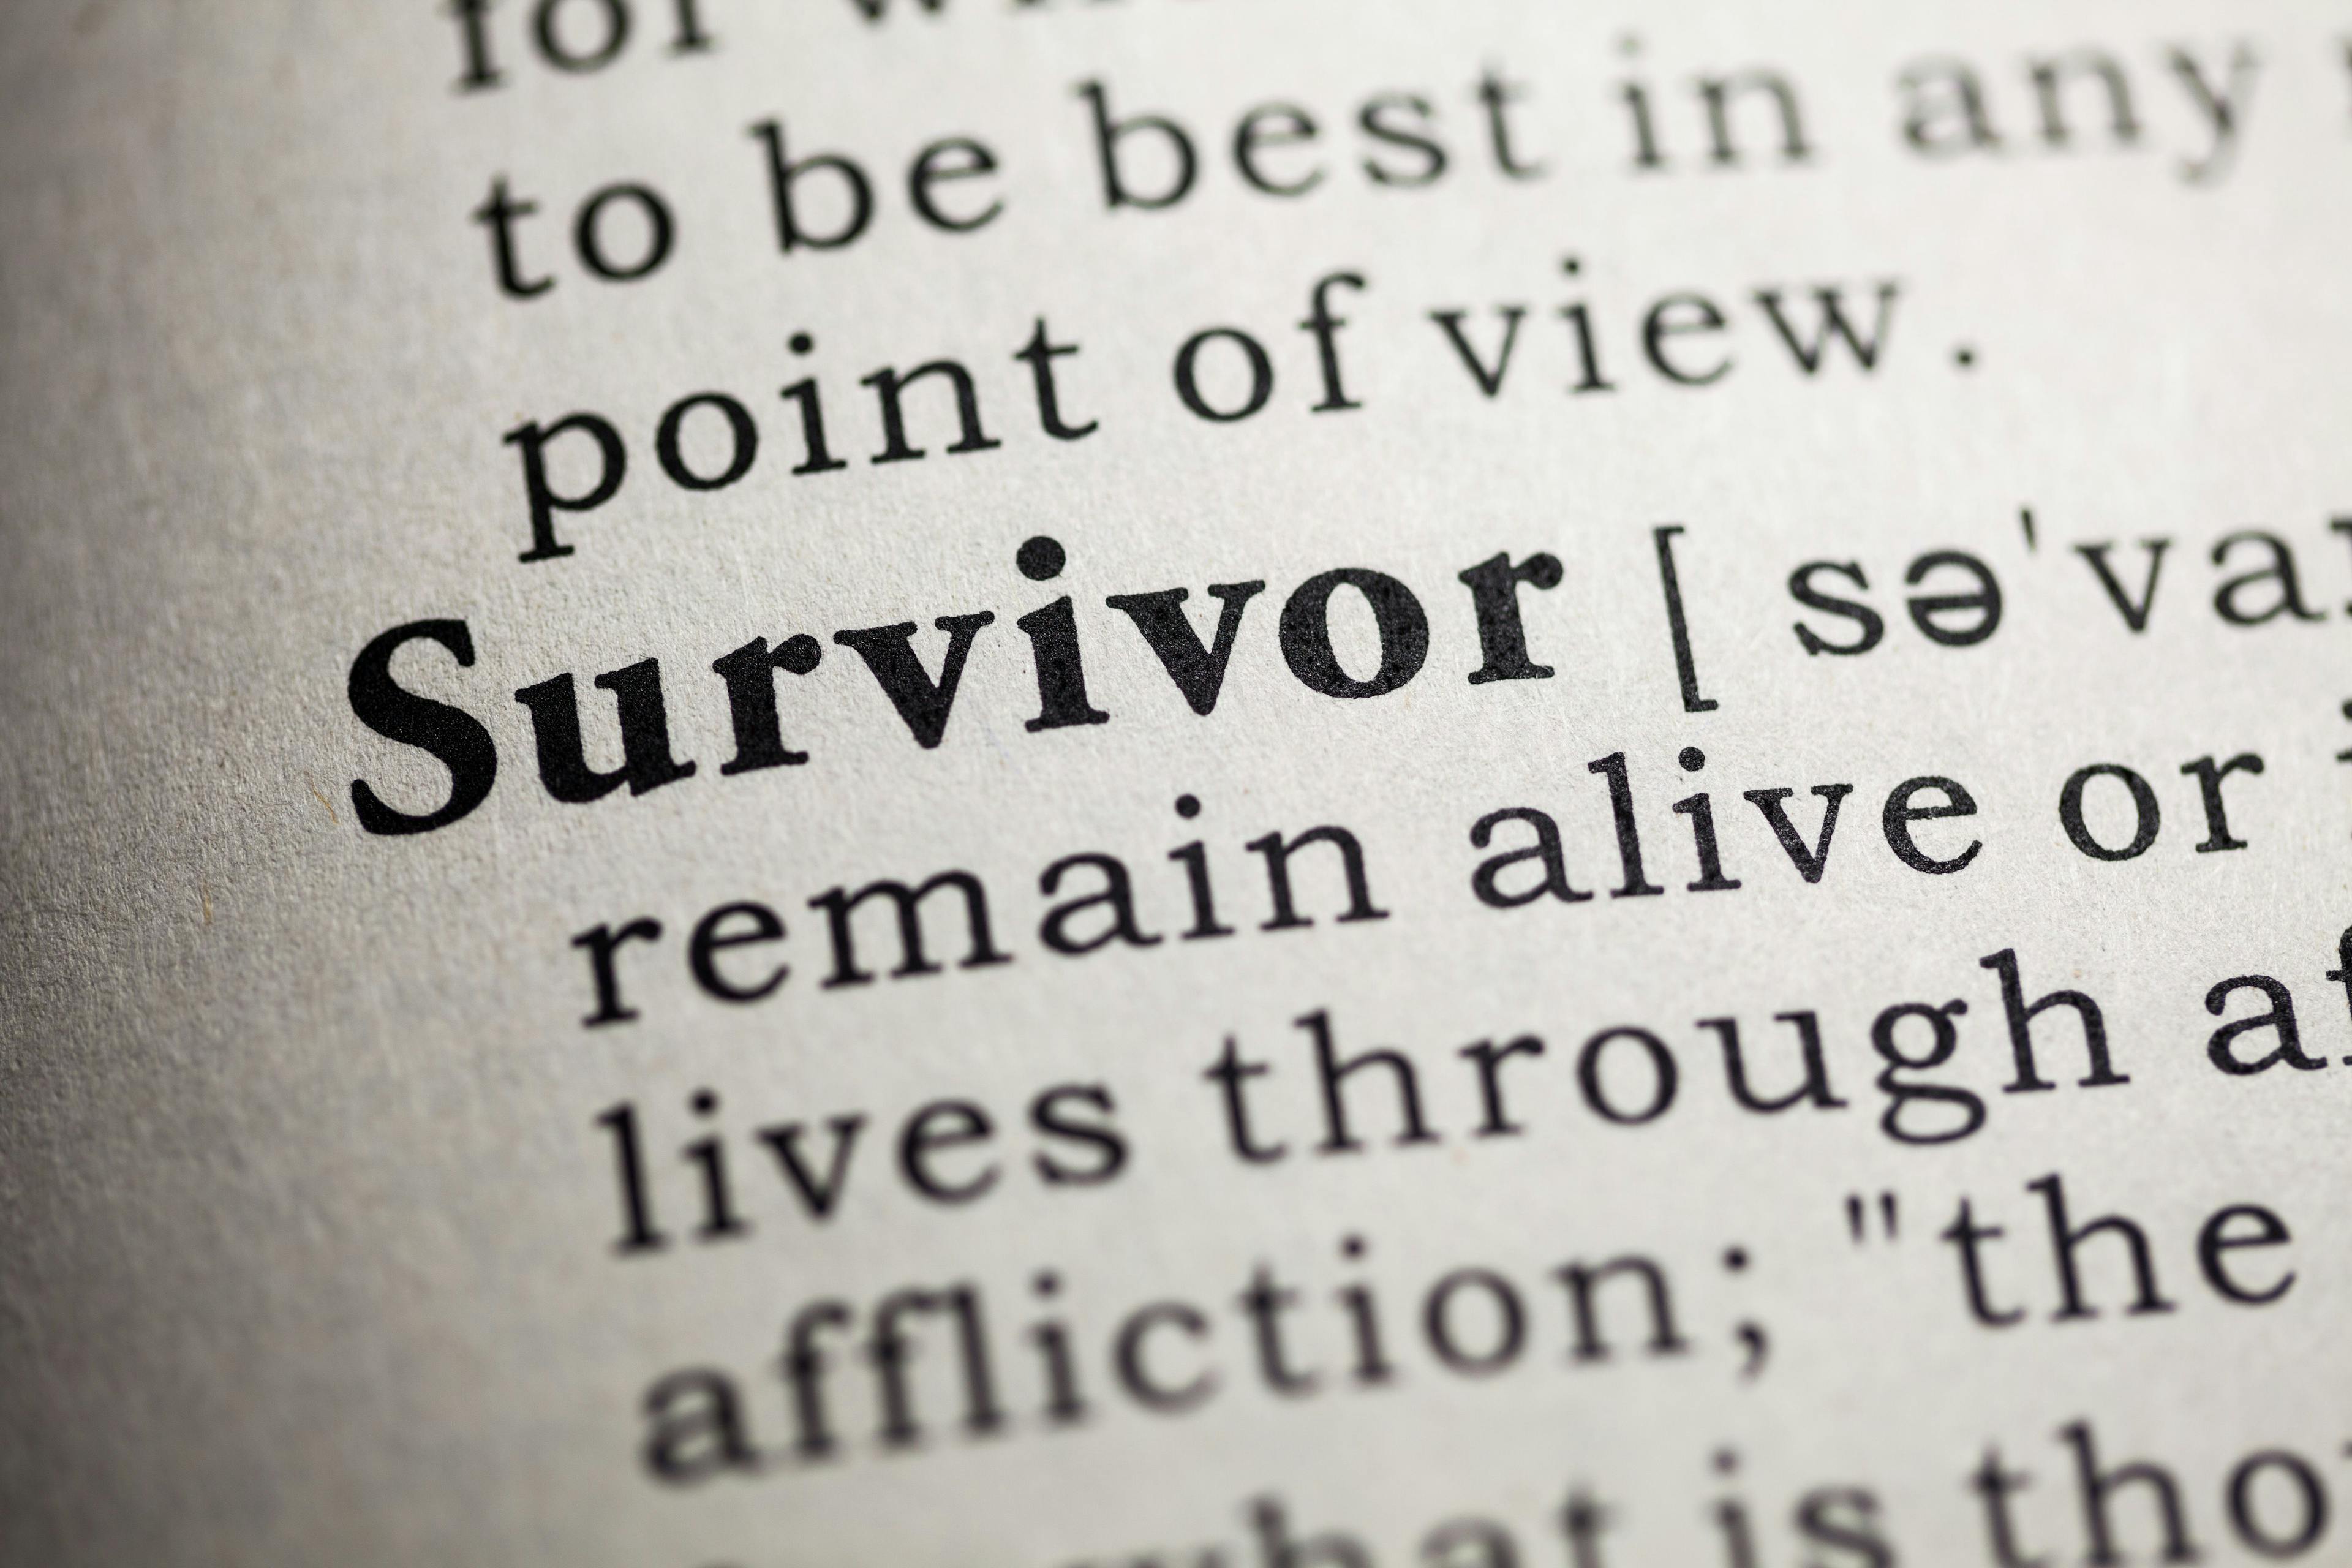 Survivor | Image credit: © - Feng Yu © - stock.adobe.com